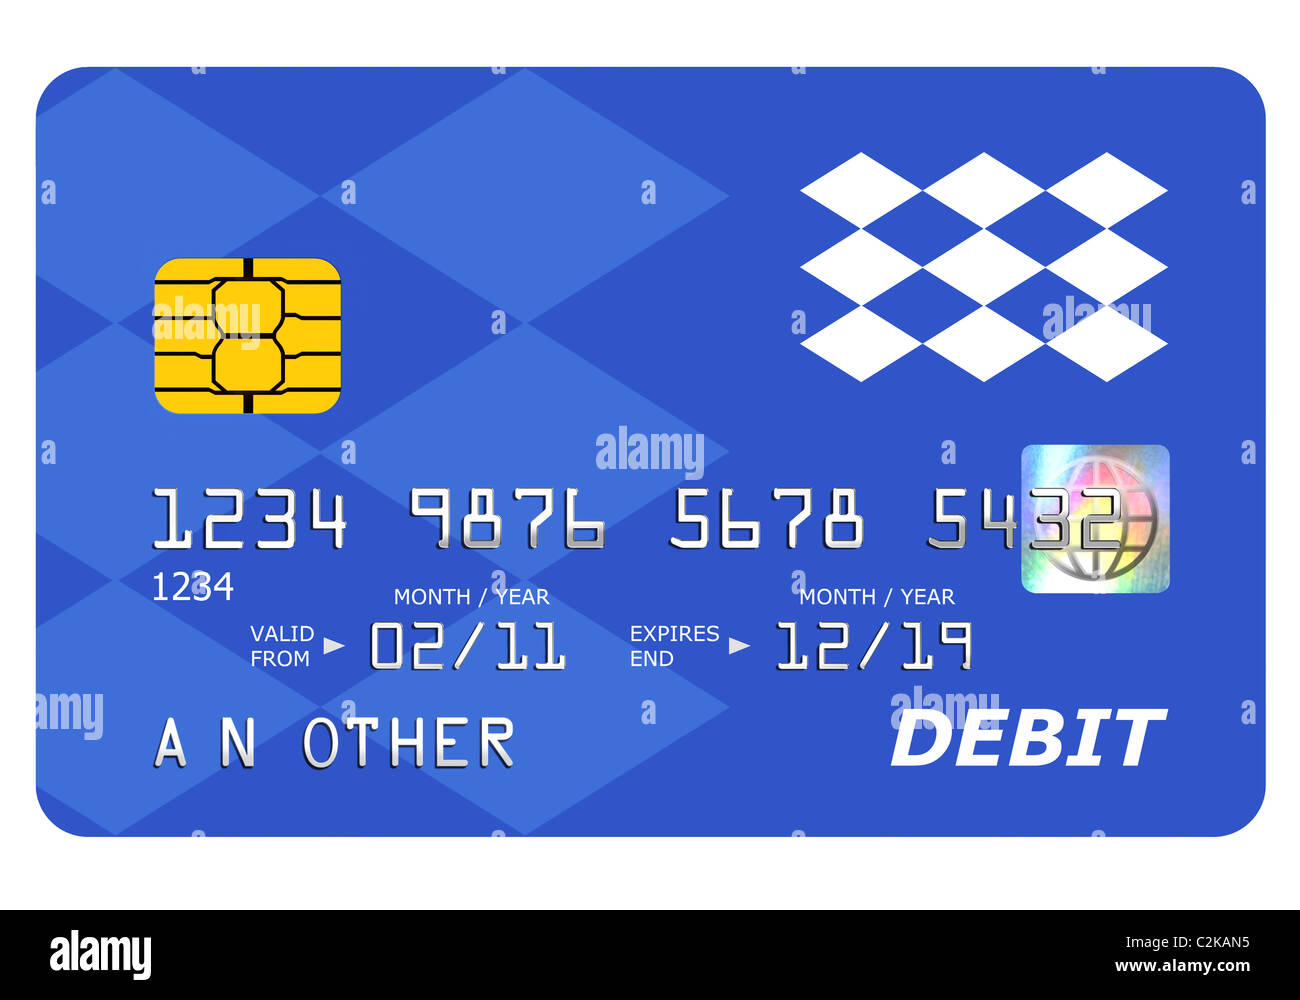 Tutto ciò che è presente su una simulazione di una carta di debito tra cui l'ologramma è stato progettato da me, il numero e il nome è generico. Foto Stock